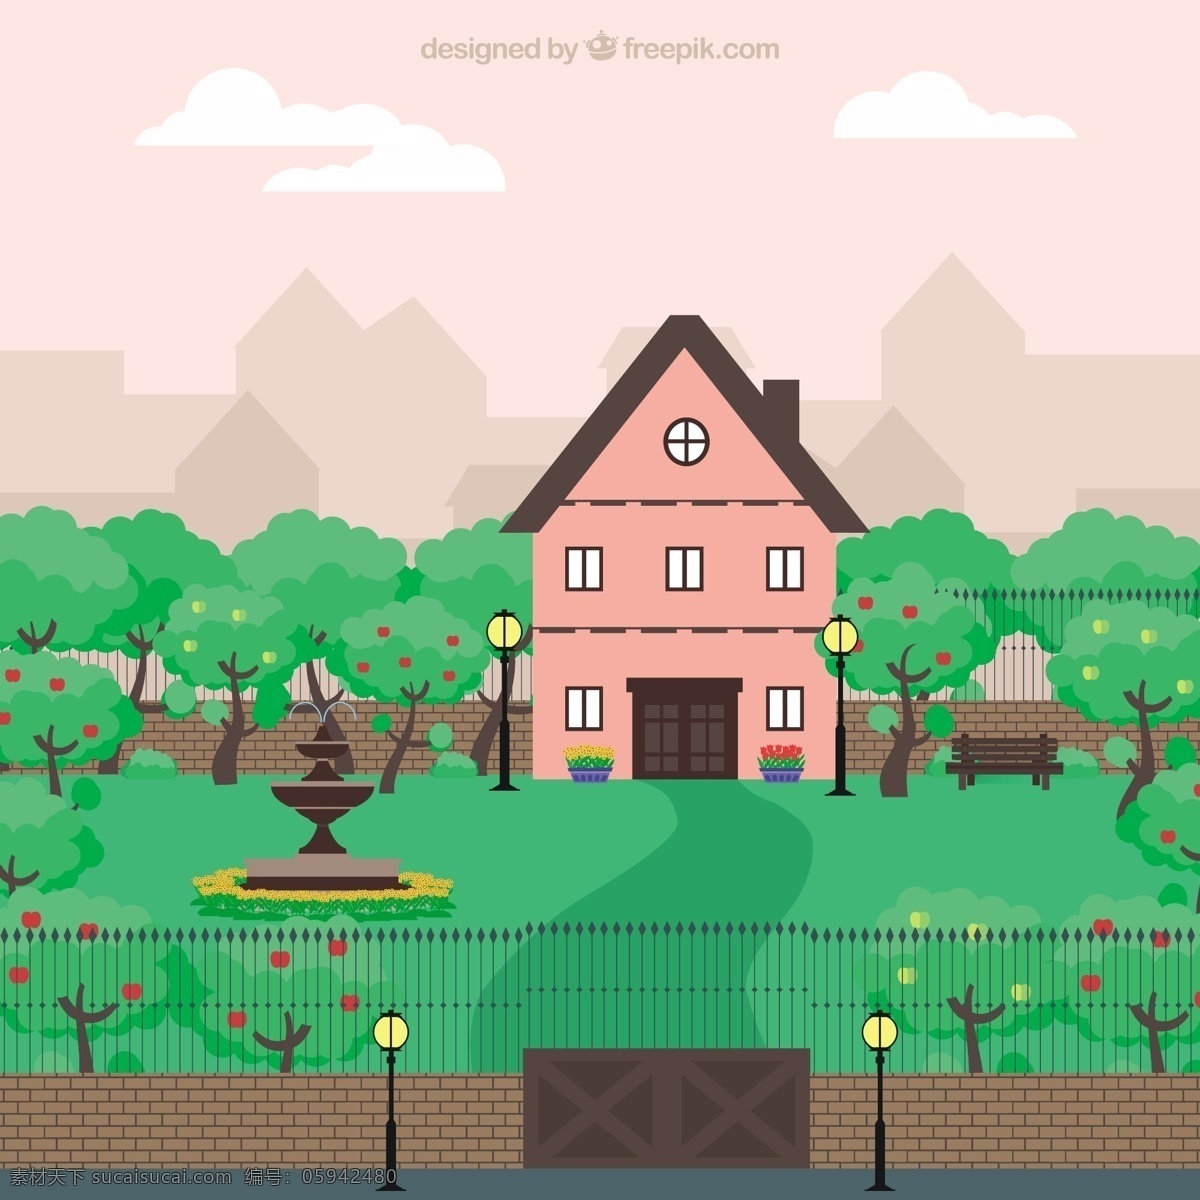 可爱 粉红色 房子 一个 大 花园 自然 绿色 粉色 景观 平 蔬菜 园林 树 平面设计 植物 栅栏 园艺 种植 喷泉 成长 灯柱 白色